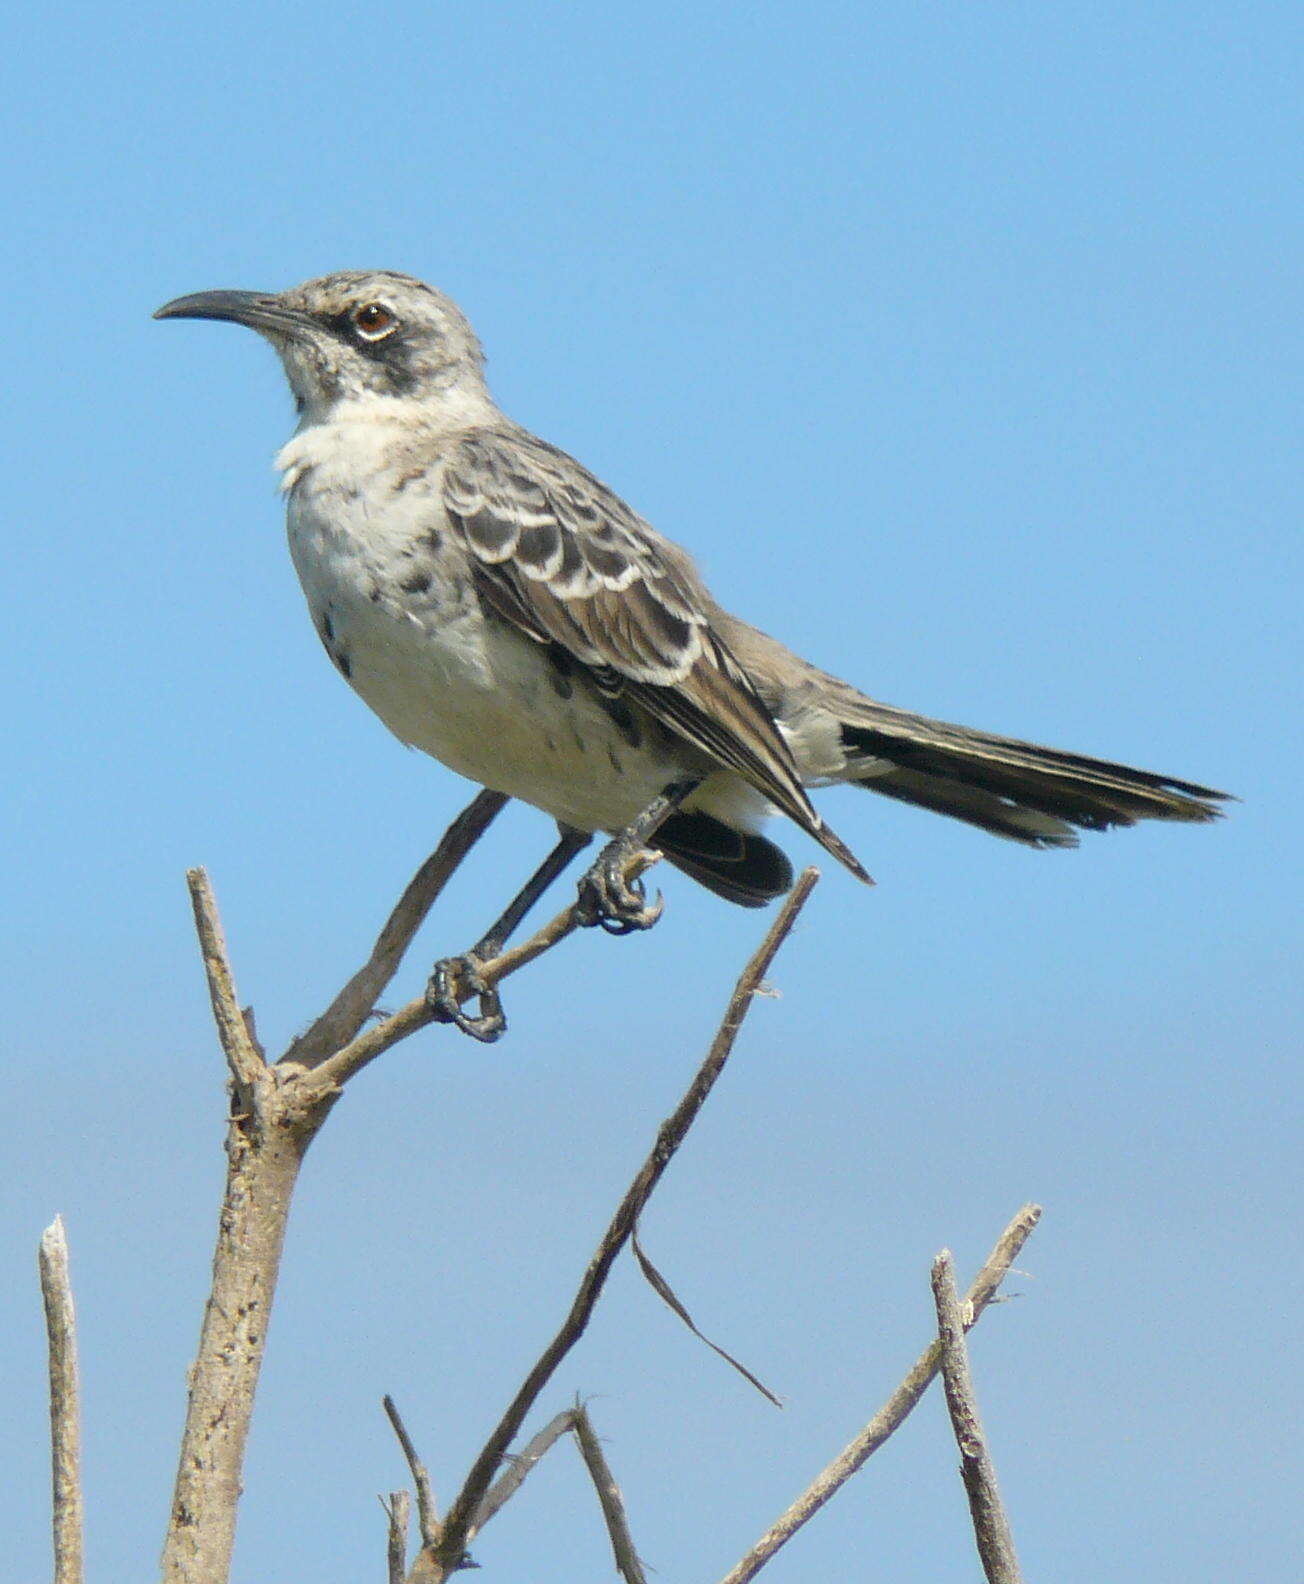 Image of Espanola Mockingbird